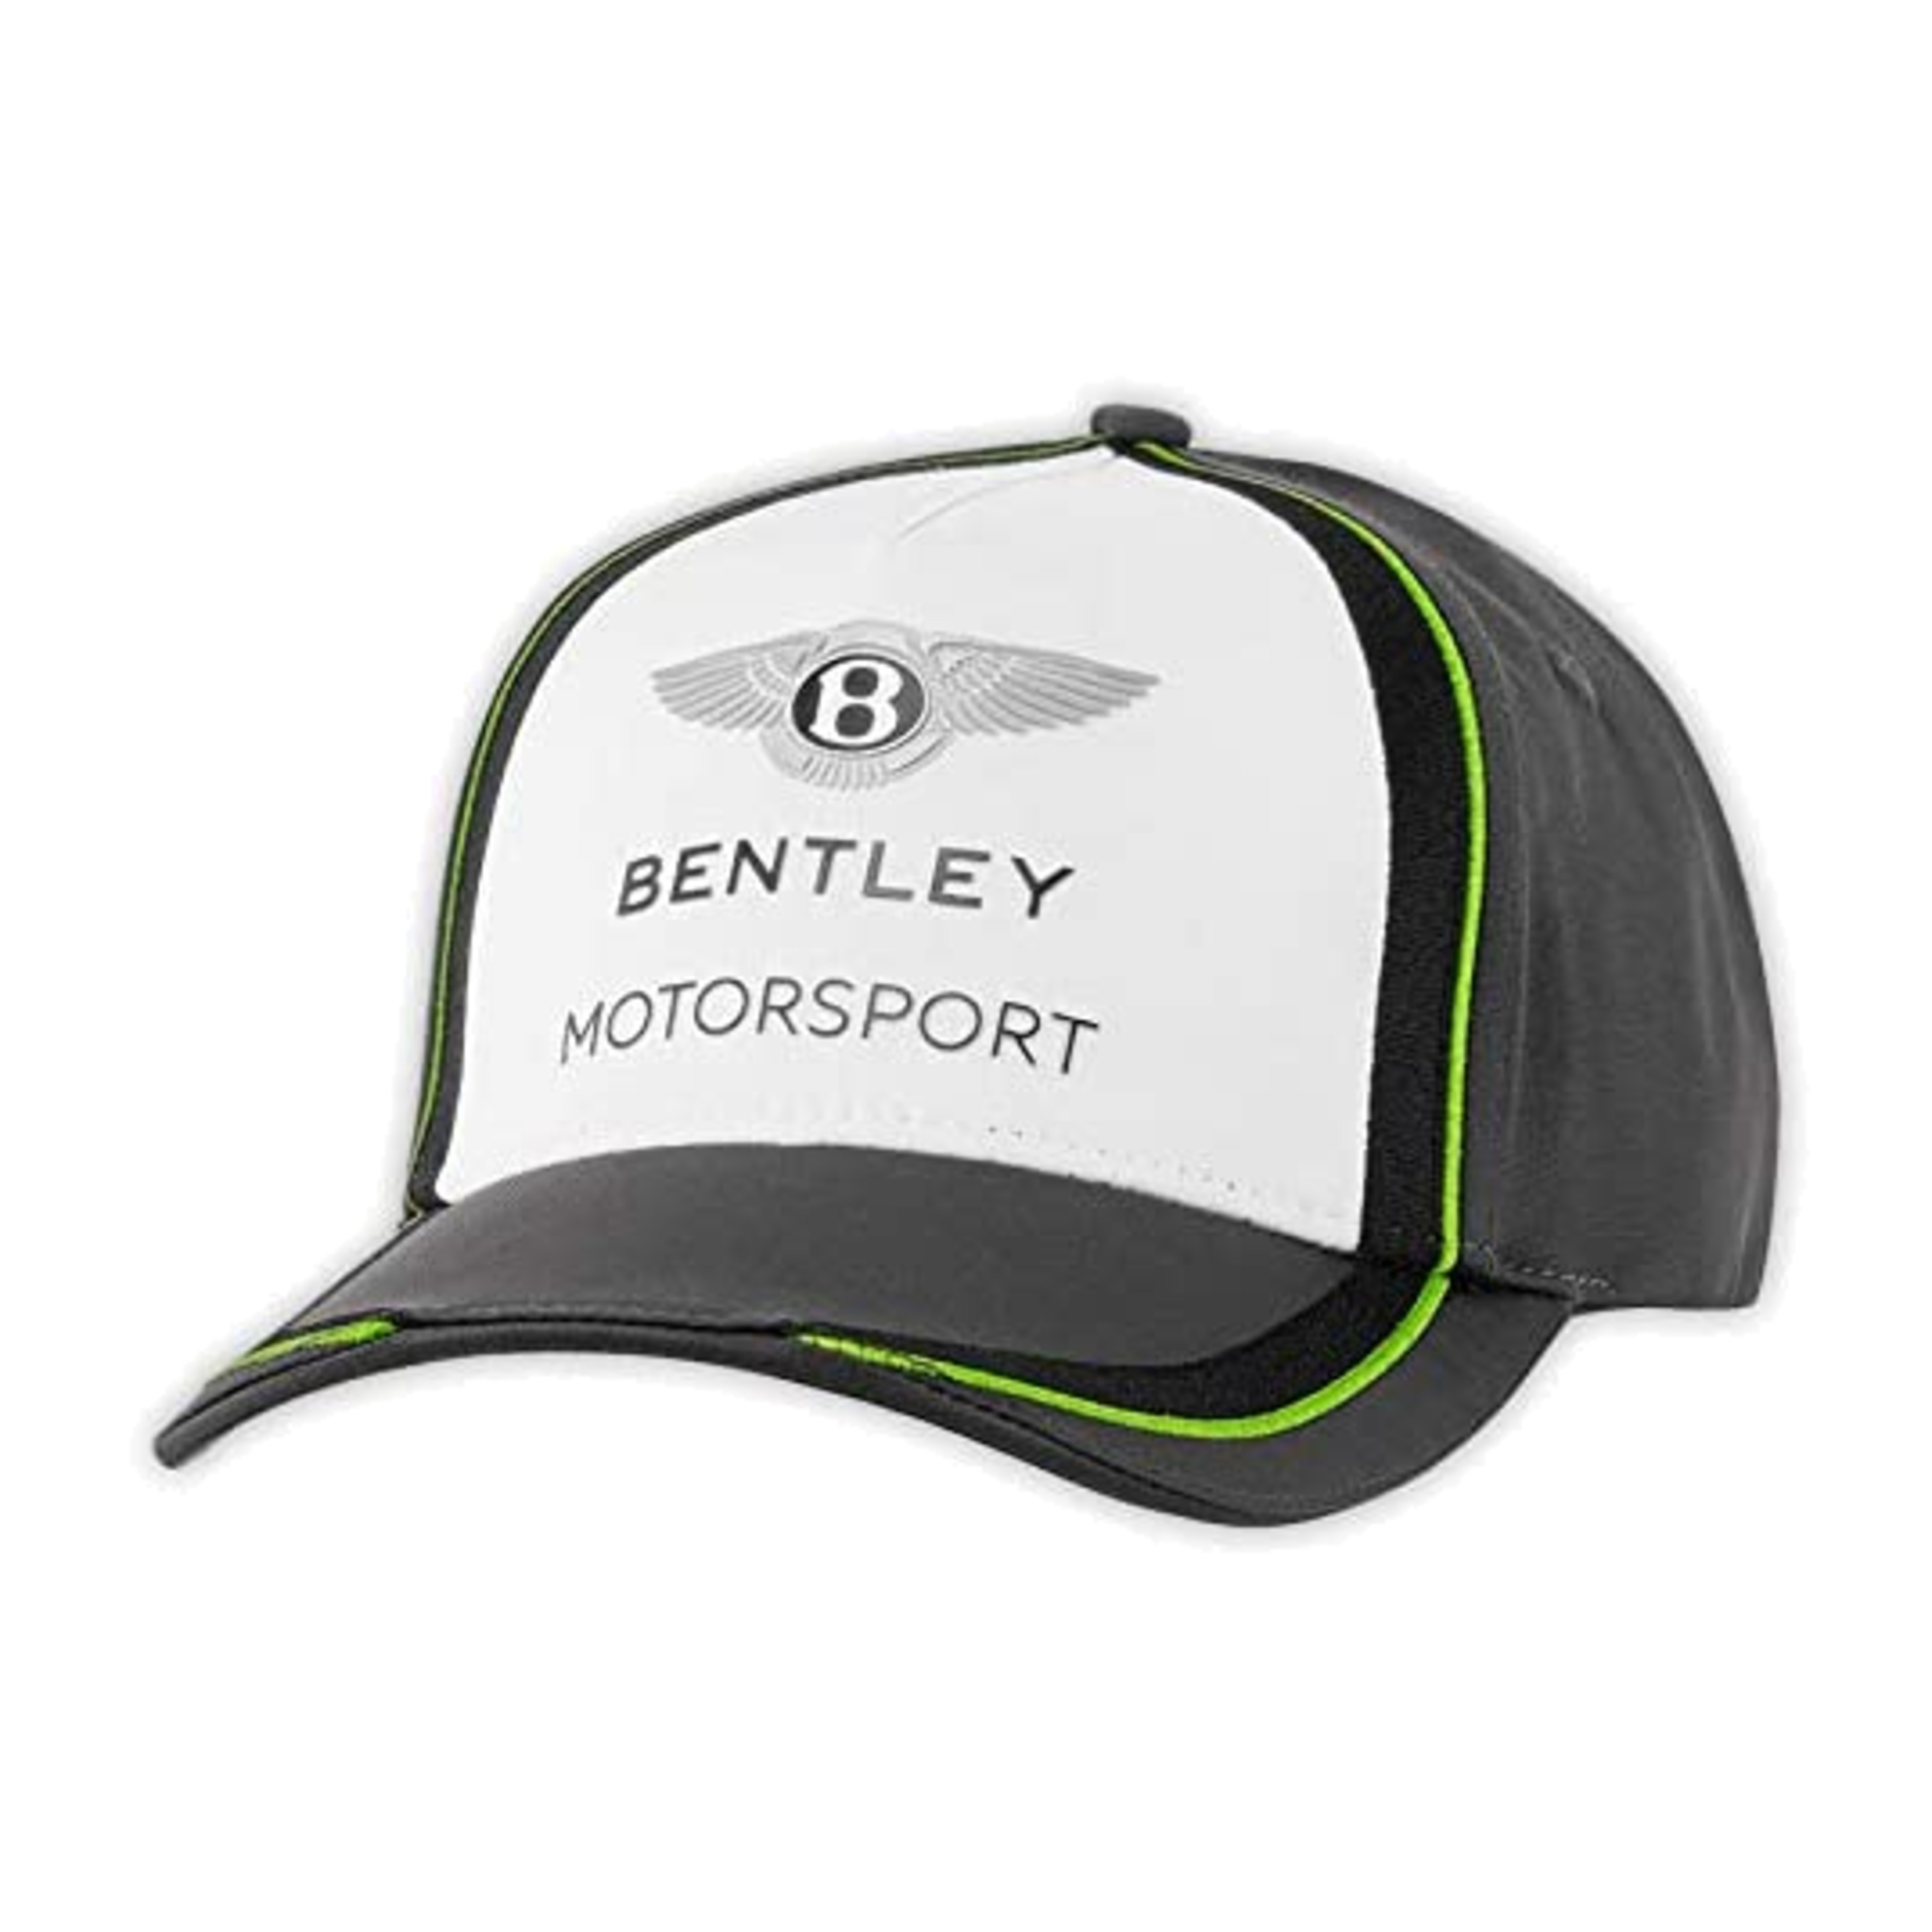 Gorra Bentley Motorsport Gt3 - Gris/Blanco - Gorra Bentley Motorsport Gt3  MKP